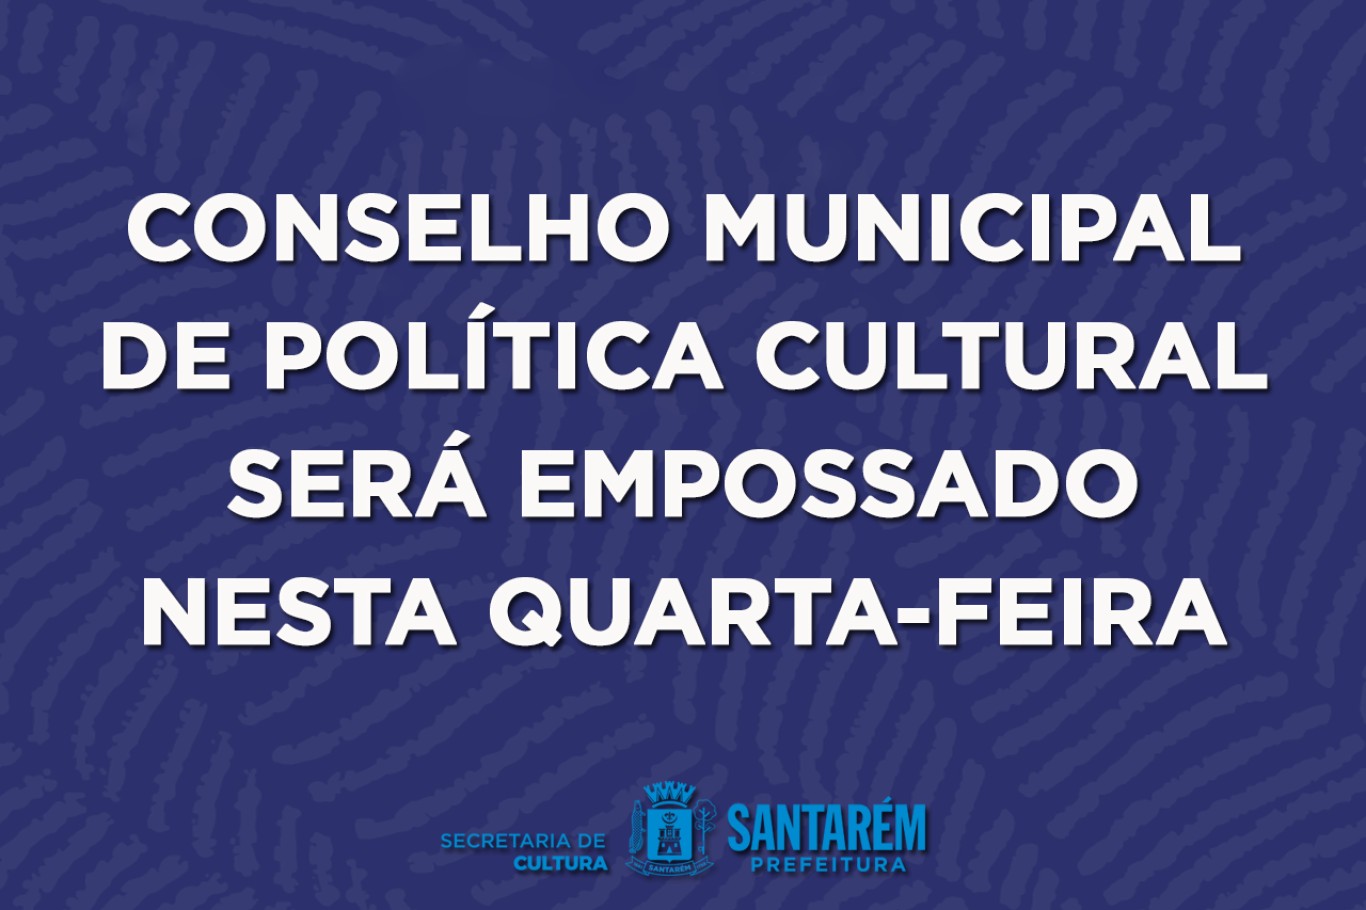 Conselho Municipal de Política Cultural de Santarém será empossado para promover o desenvolvimento cultural